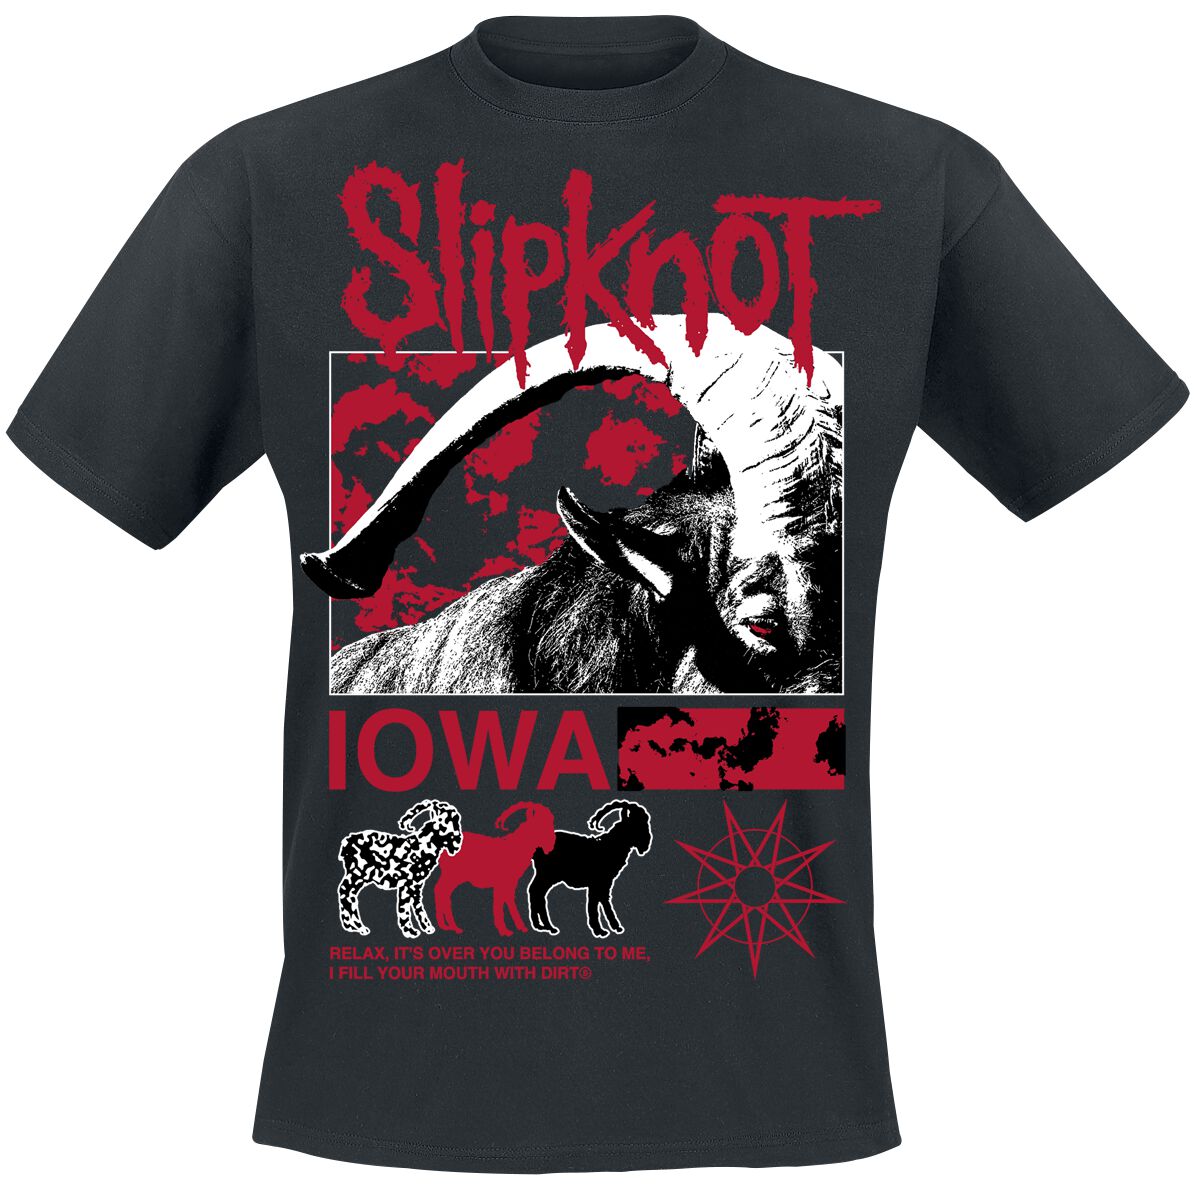 Slipknot - T-Shirt Iowa Goat